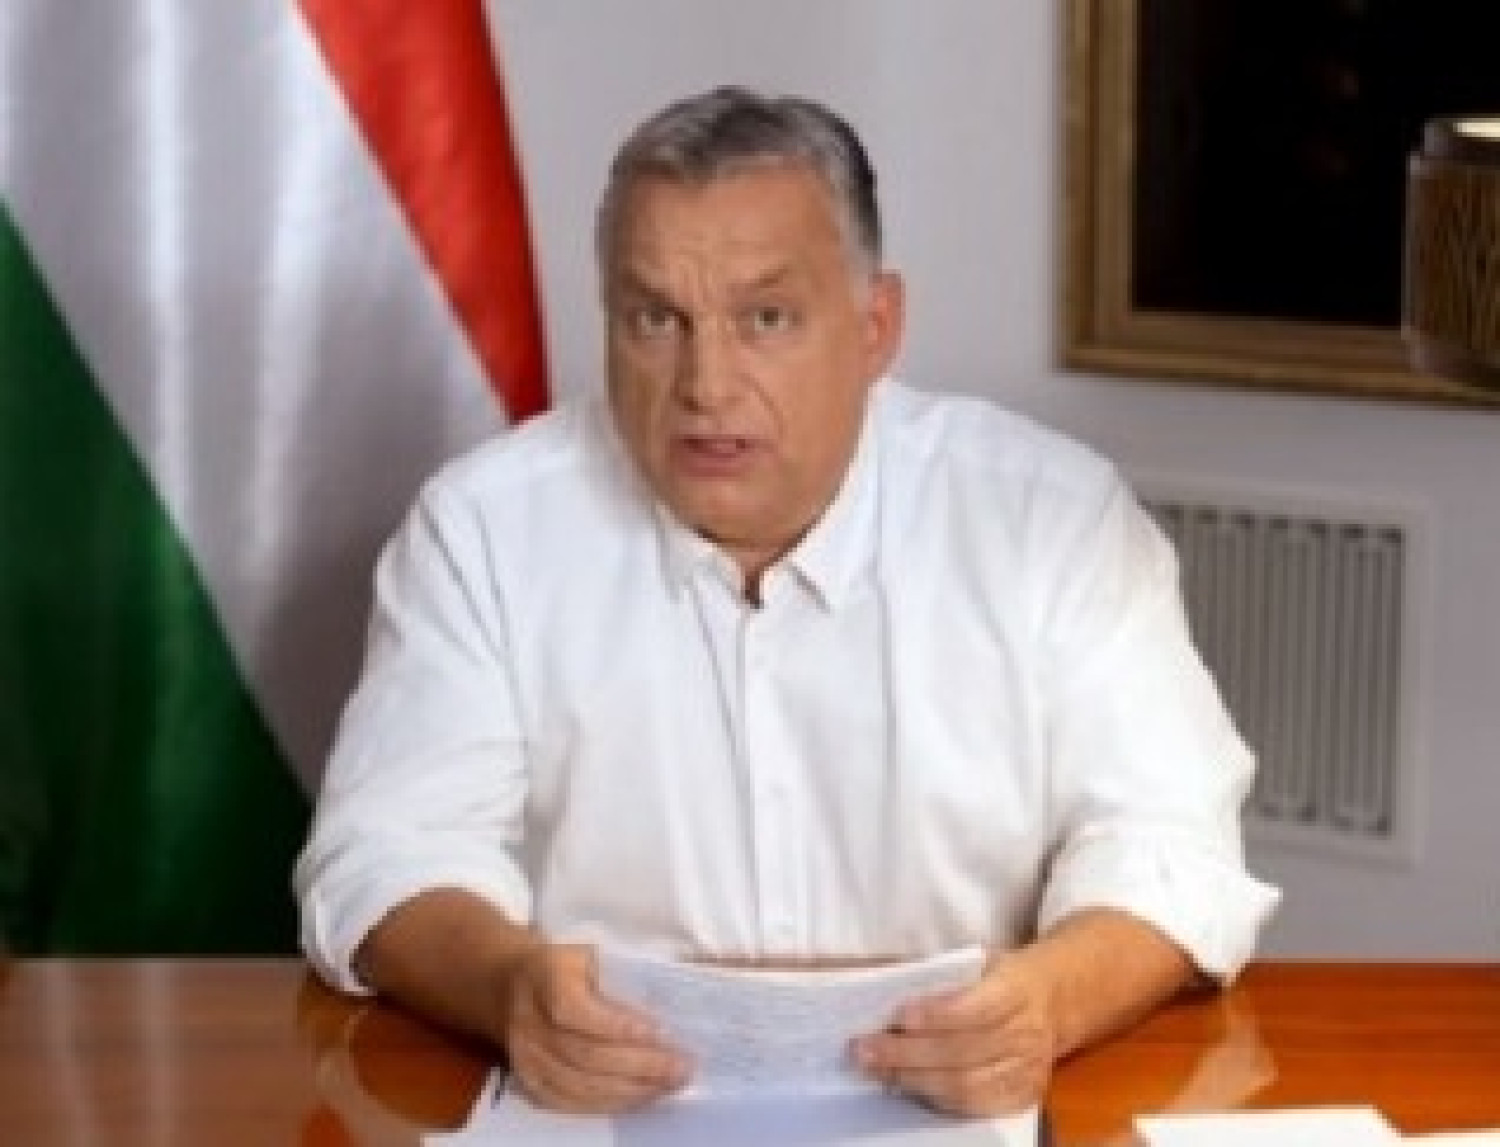 Letöltendő börtönt kérnek a magyar milliárdosra!